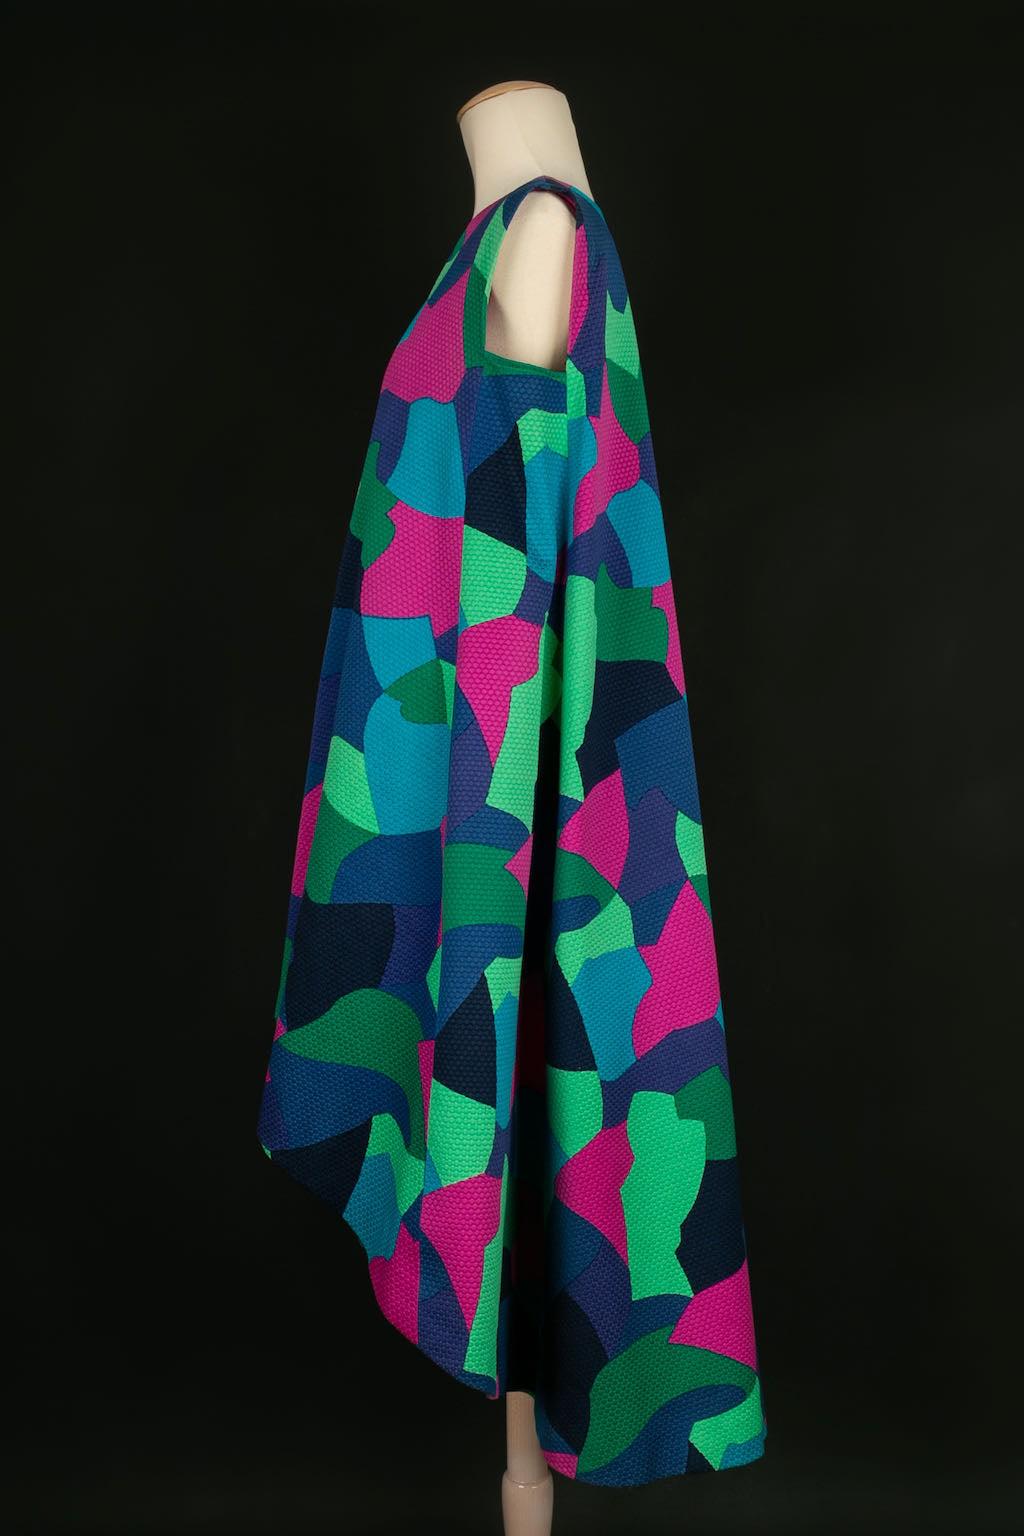 Yves Saint Laurent -(Made in France) Asymmetrisches Kleid aus bedruckter Baumwolle. Es ist keine Größe angegeben, sie entspricht einer 42FR. Ready-to-wear-Kollektion Frühjahr-Sommer 1992.

Zusätzliche Informationen: 
Abmessungen: Brustkorb: 55 cm,